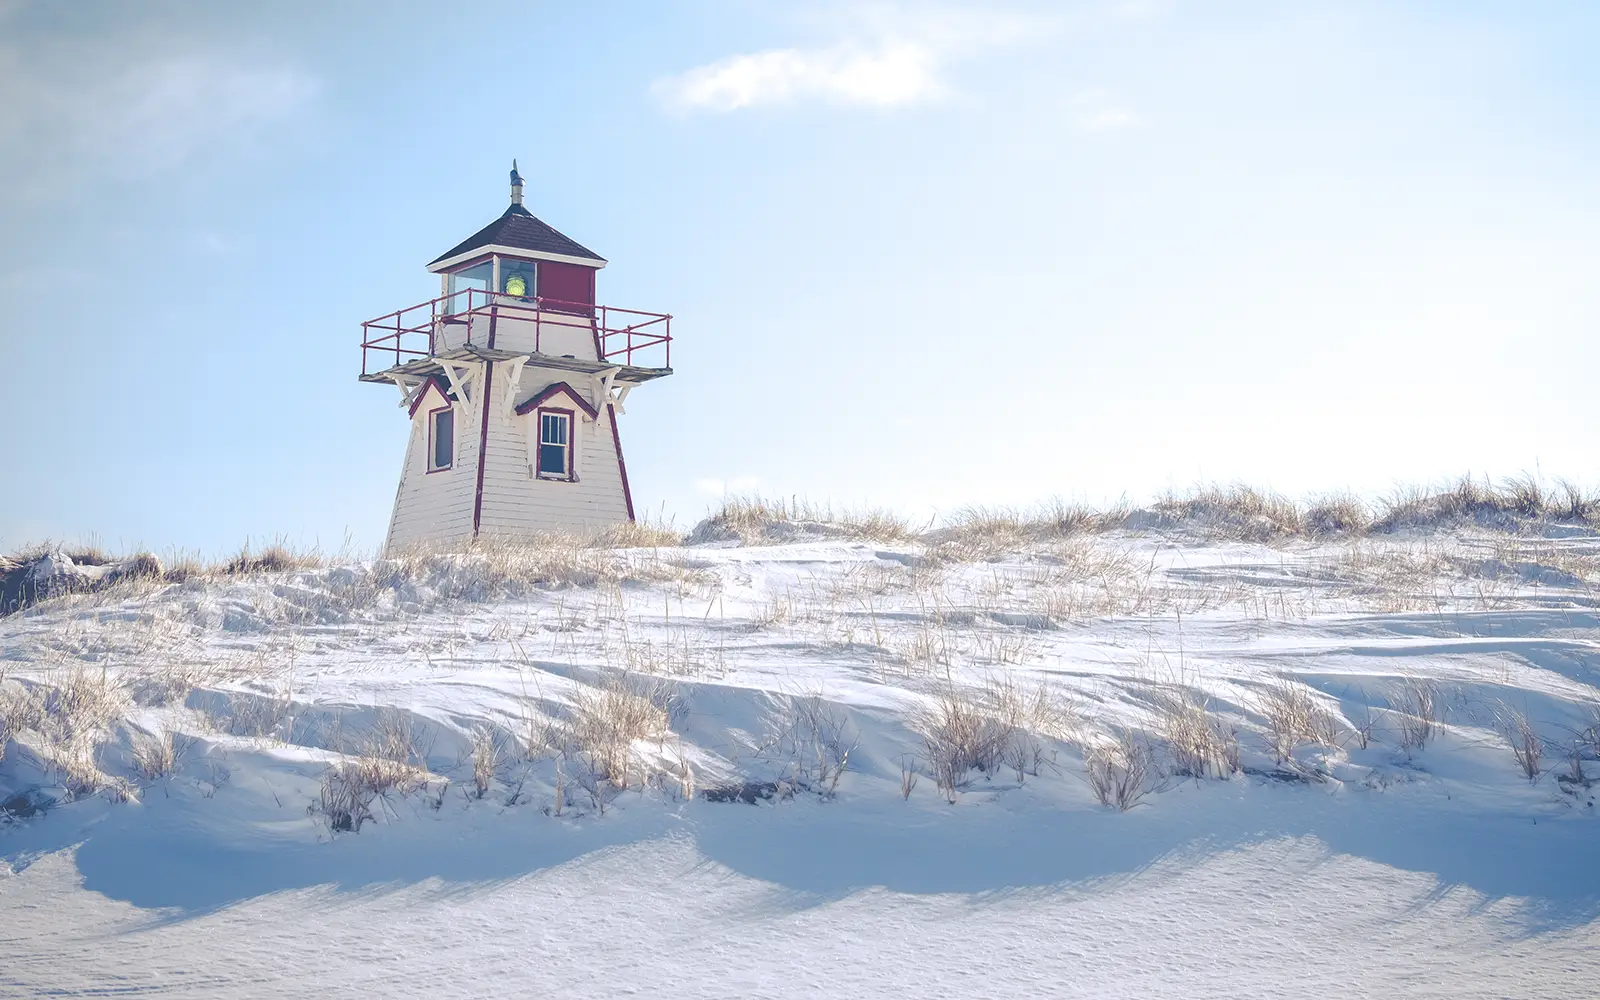 Lighthouse sitting on a snowy landscape